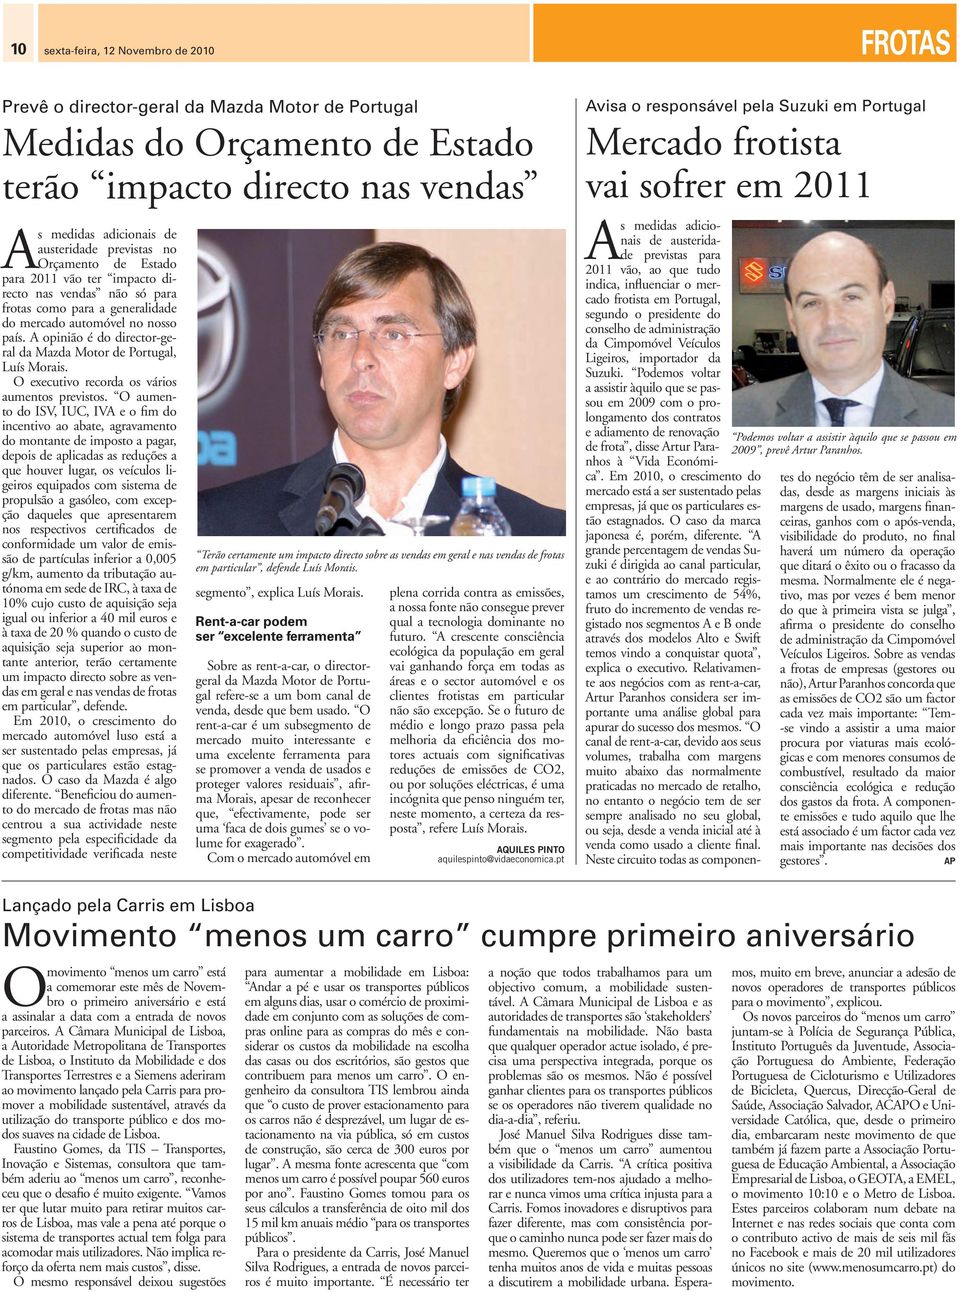 A opinião é do director-geral da Mazda Motor de Portugal, Luís Morais. O executivo recorda os vários aumentos previstos.